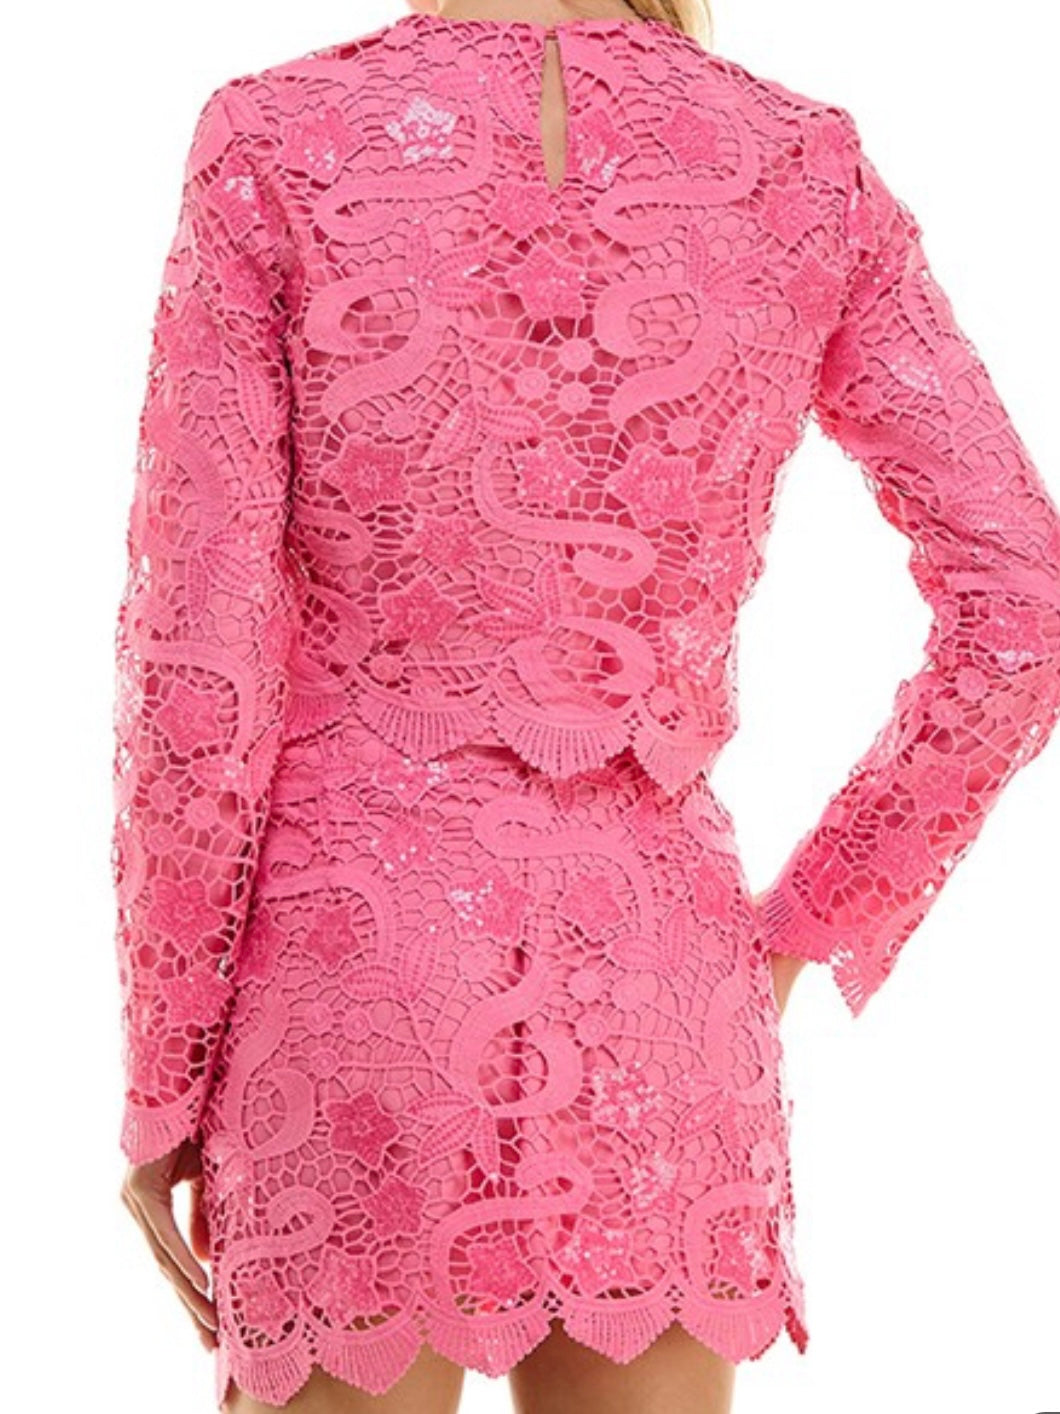 Delicate Pink Lace Long Sleeve Blouse – Ah Là Laà Lifestyle Boutique